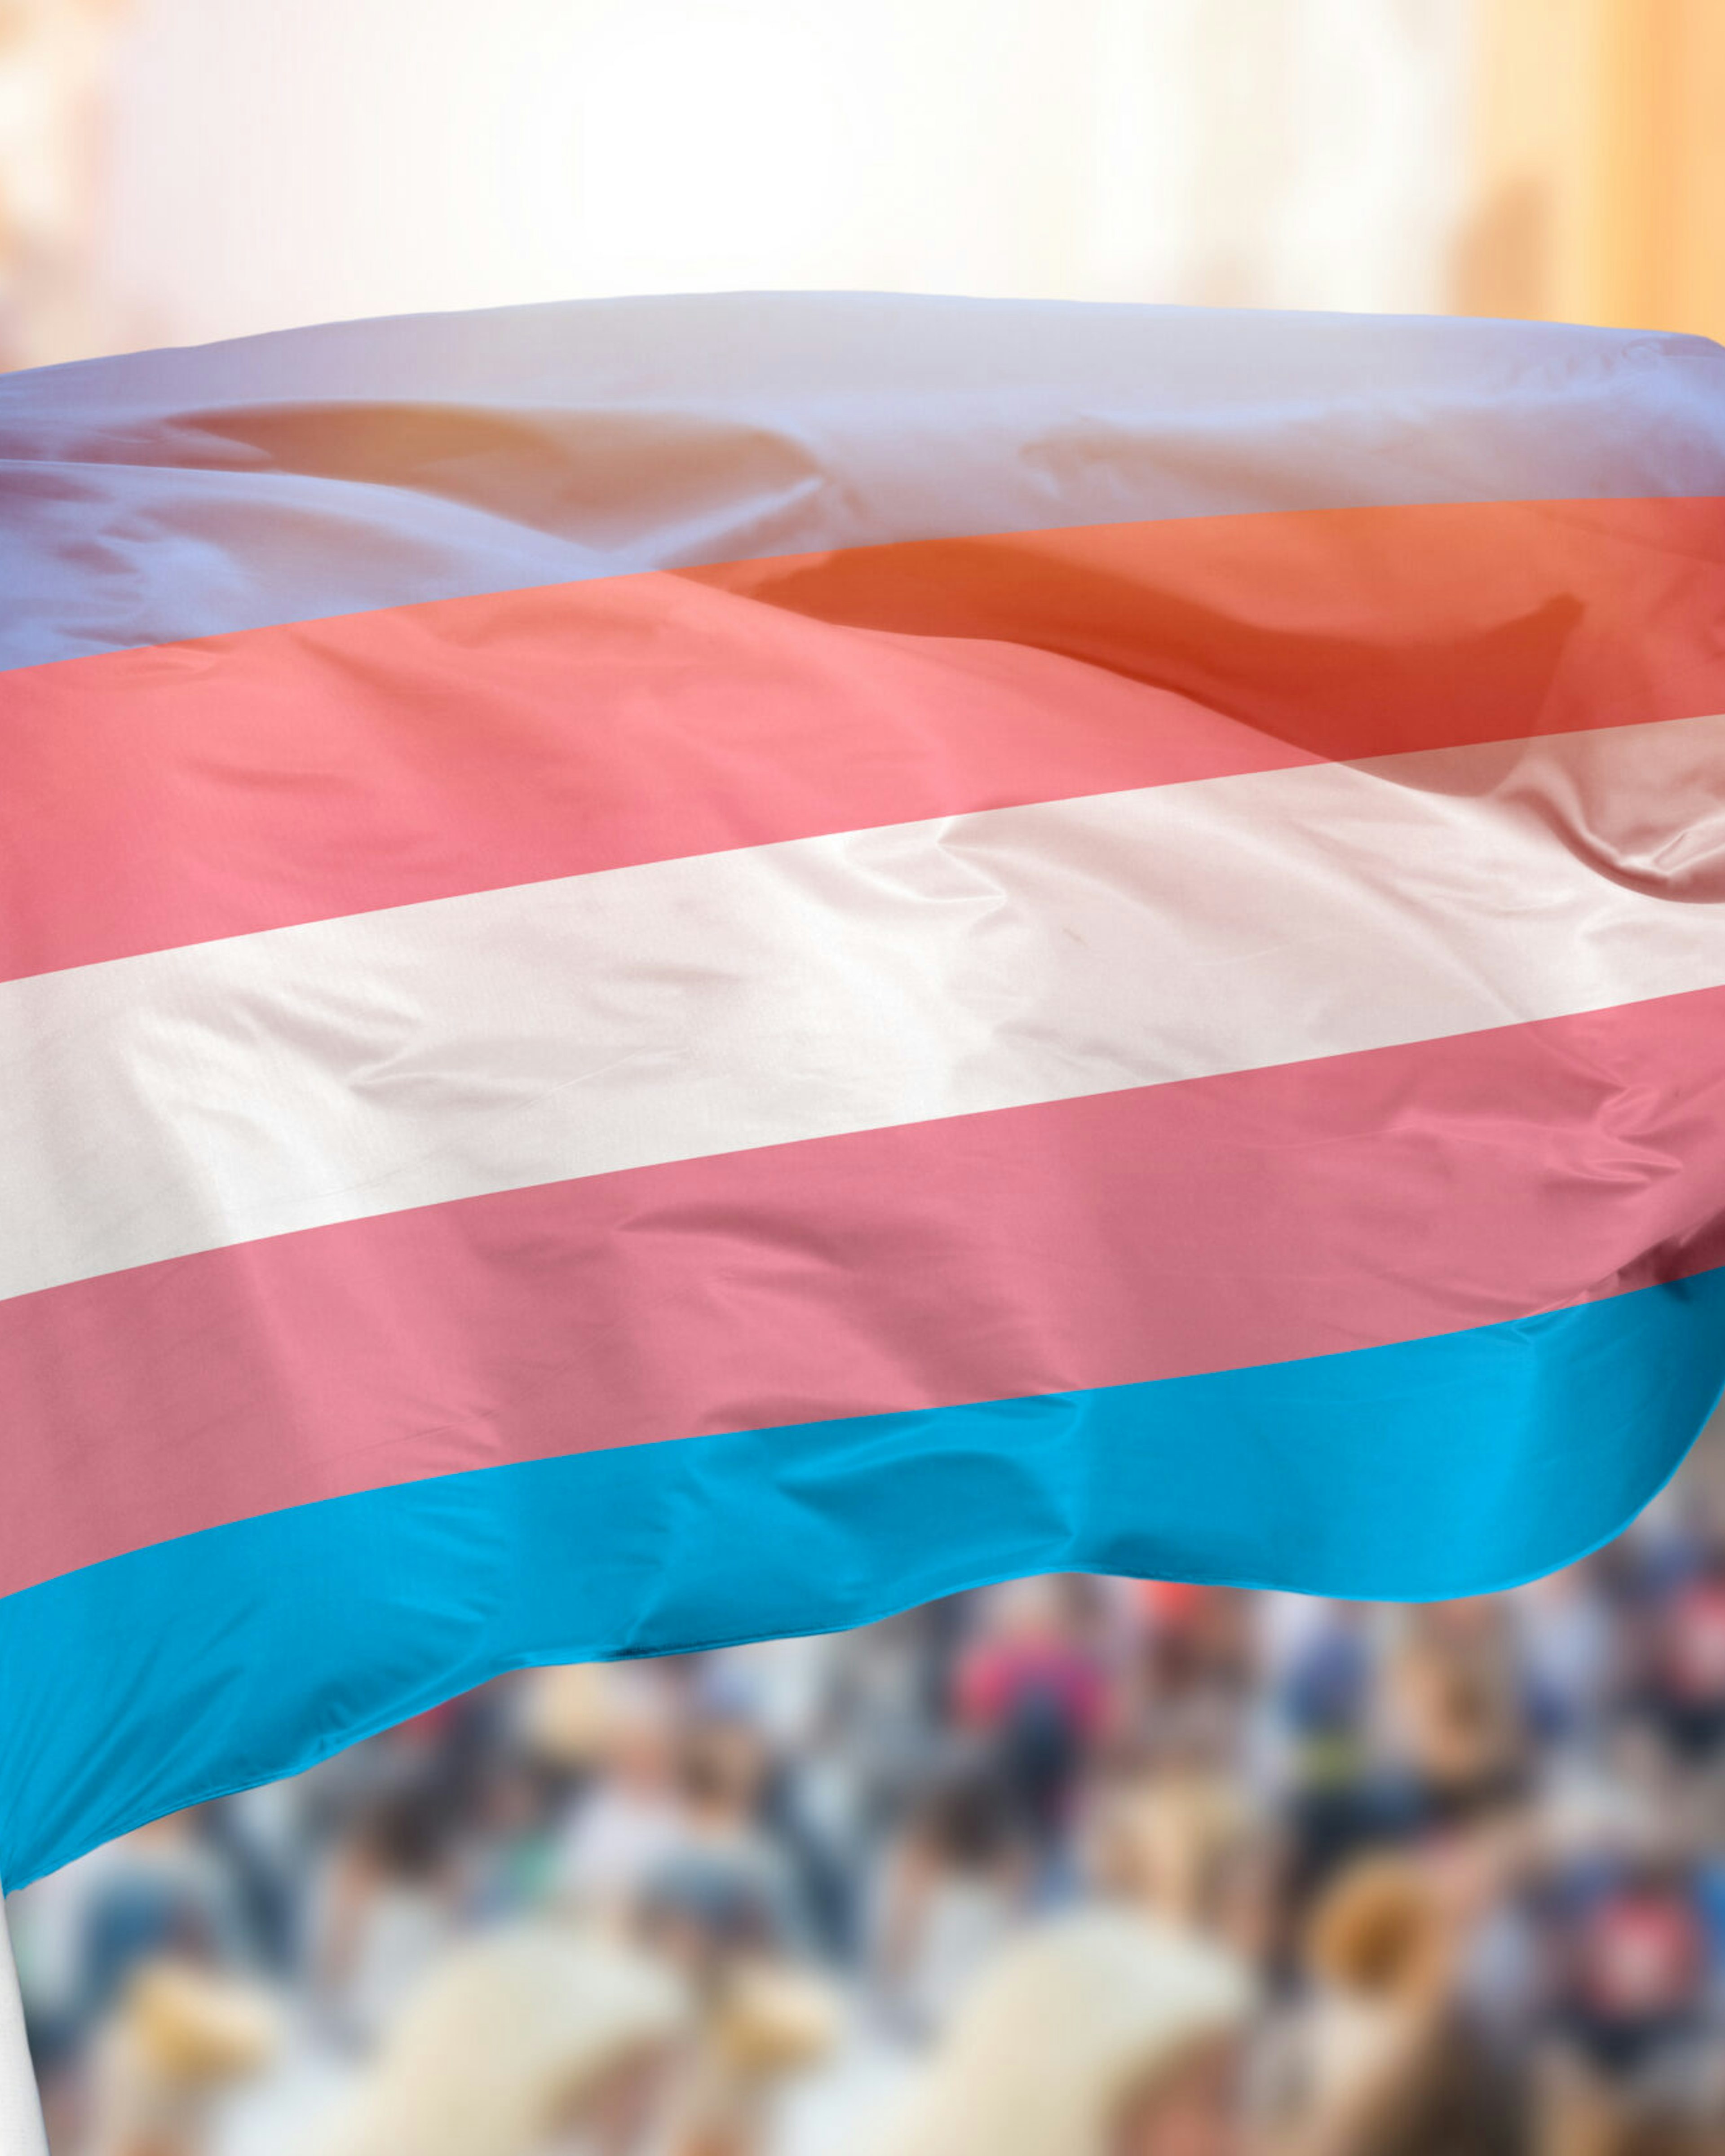 Transgender flag at protest.